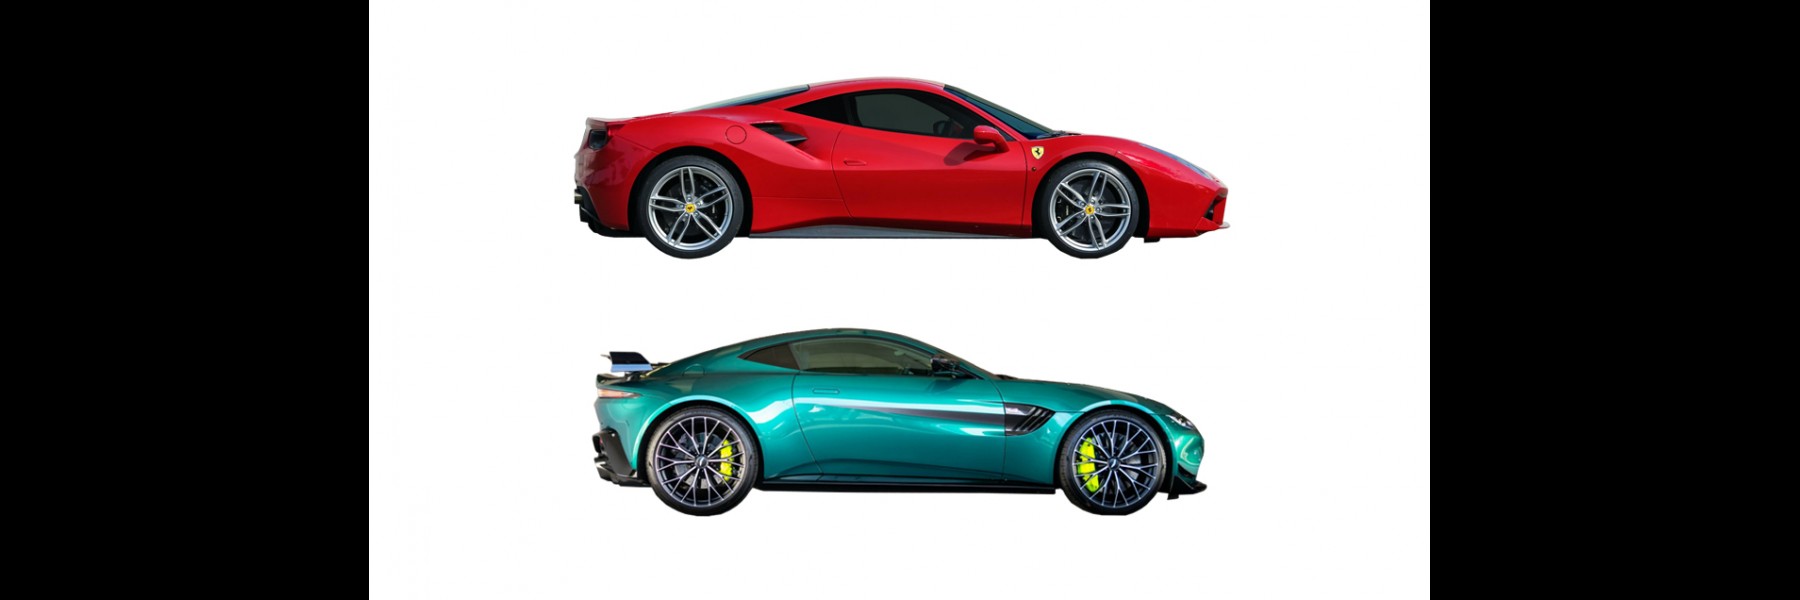 Pilotez une Ferrari 488 GTB et une Aston Martin Vantage ! Offrez un bon cadeau valable 1 an sur le Circuit du Laquais.